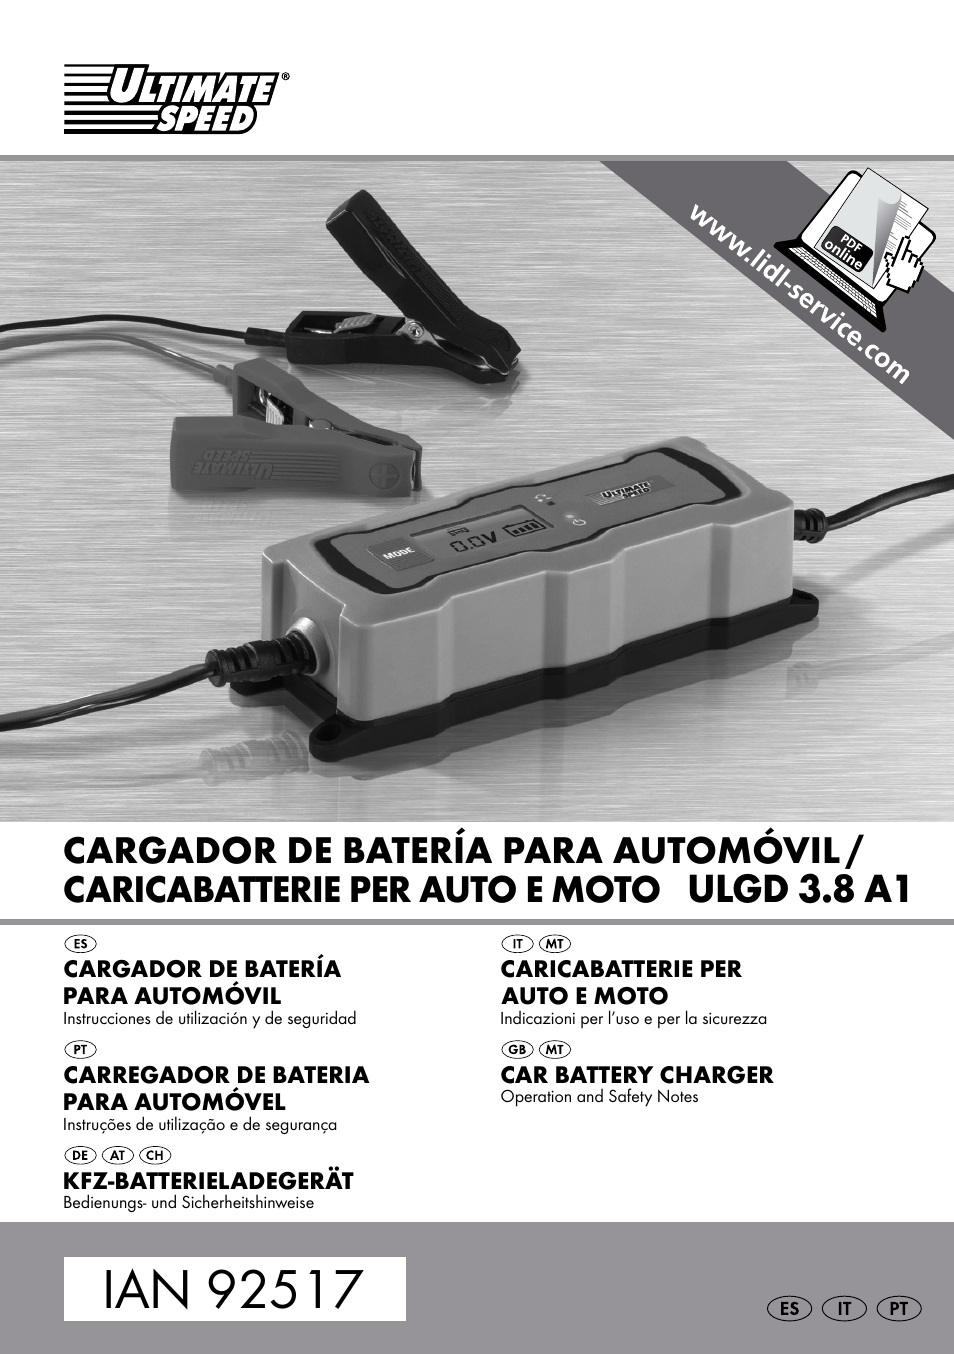 مقاطعة العنكبوت الويب حمض كثافة الصعب car battery charger ulg 3.8 b1 -  madbeesentertainment.com